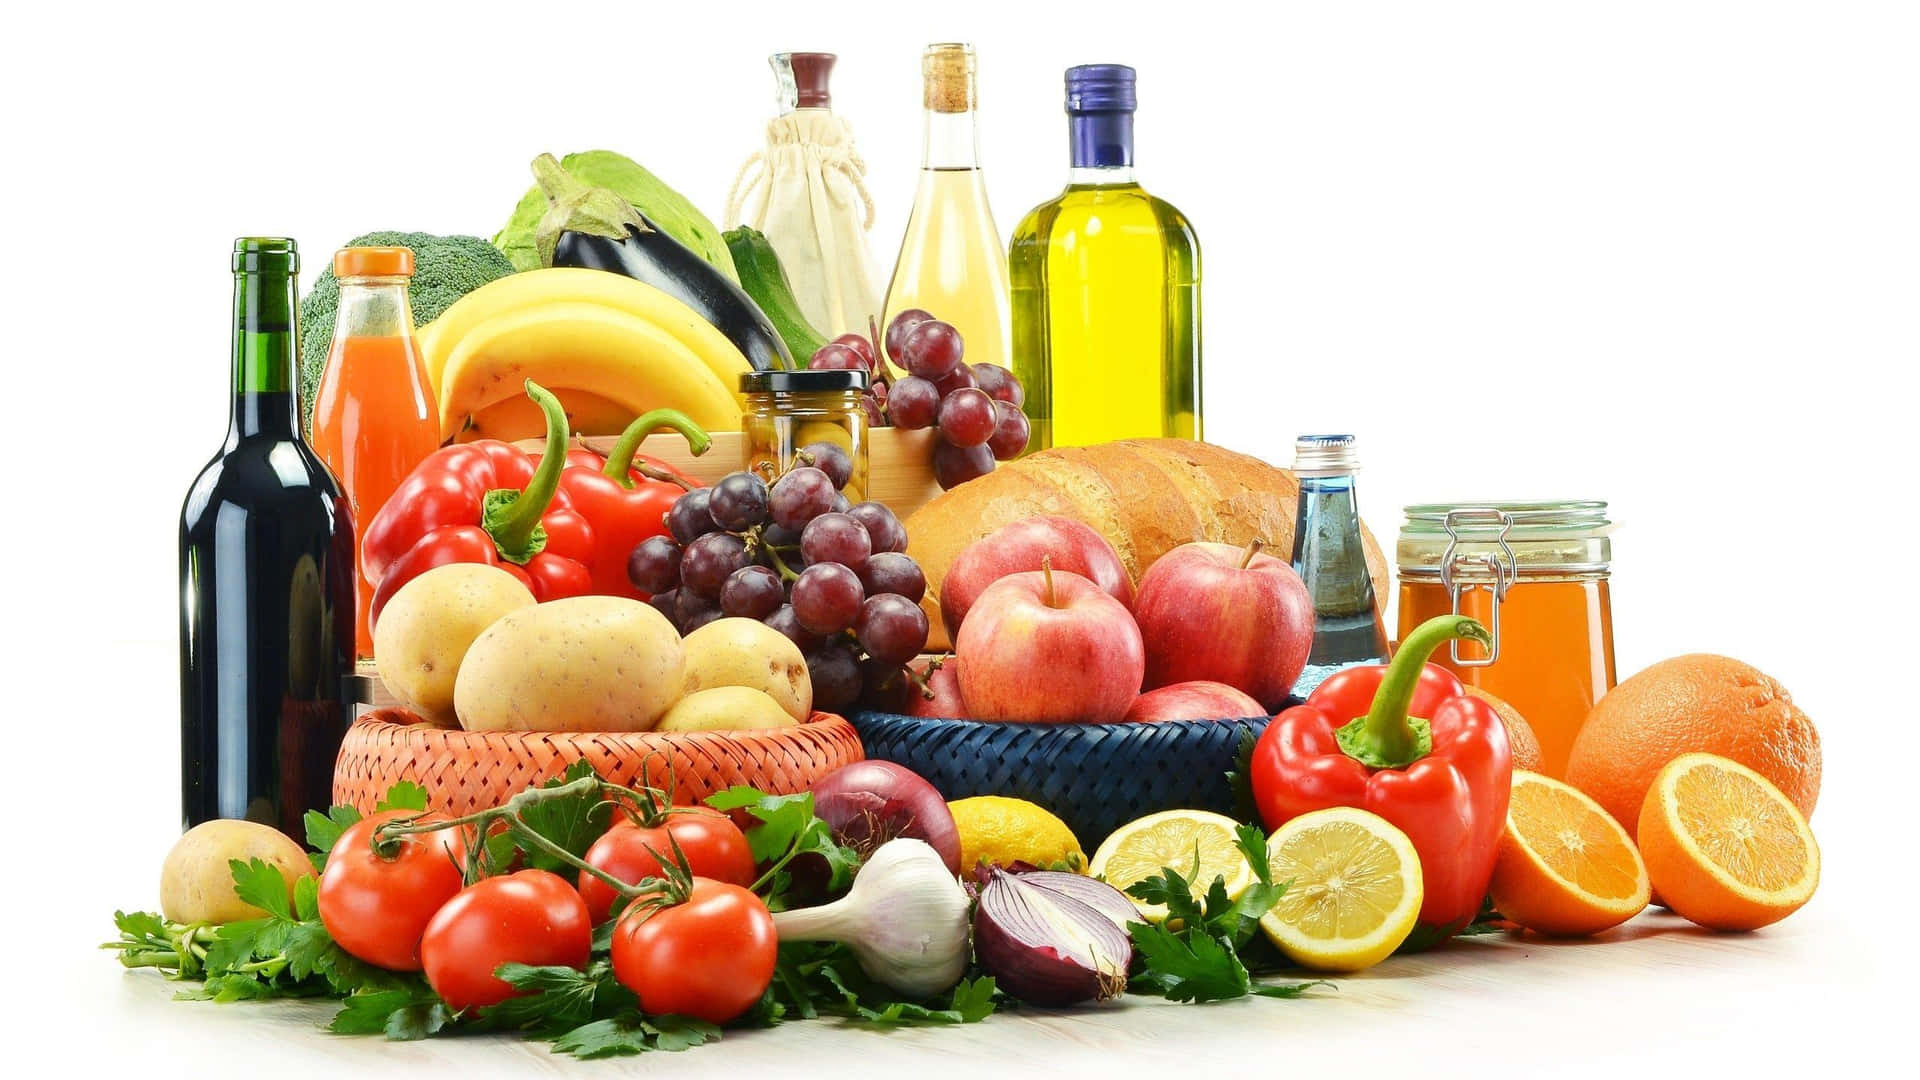 Ingredientesde Alimentos Saudáveis Para Imagem De Culinária.